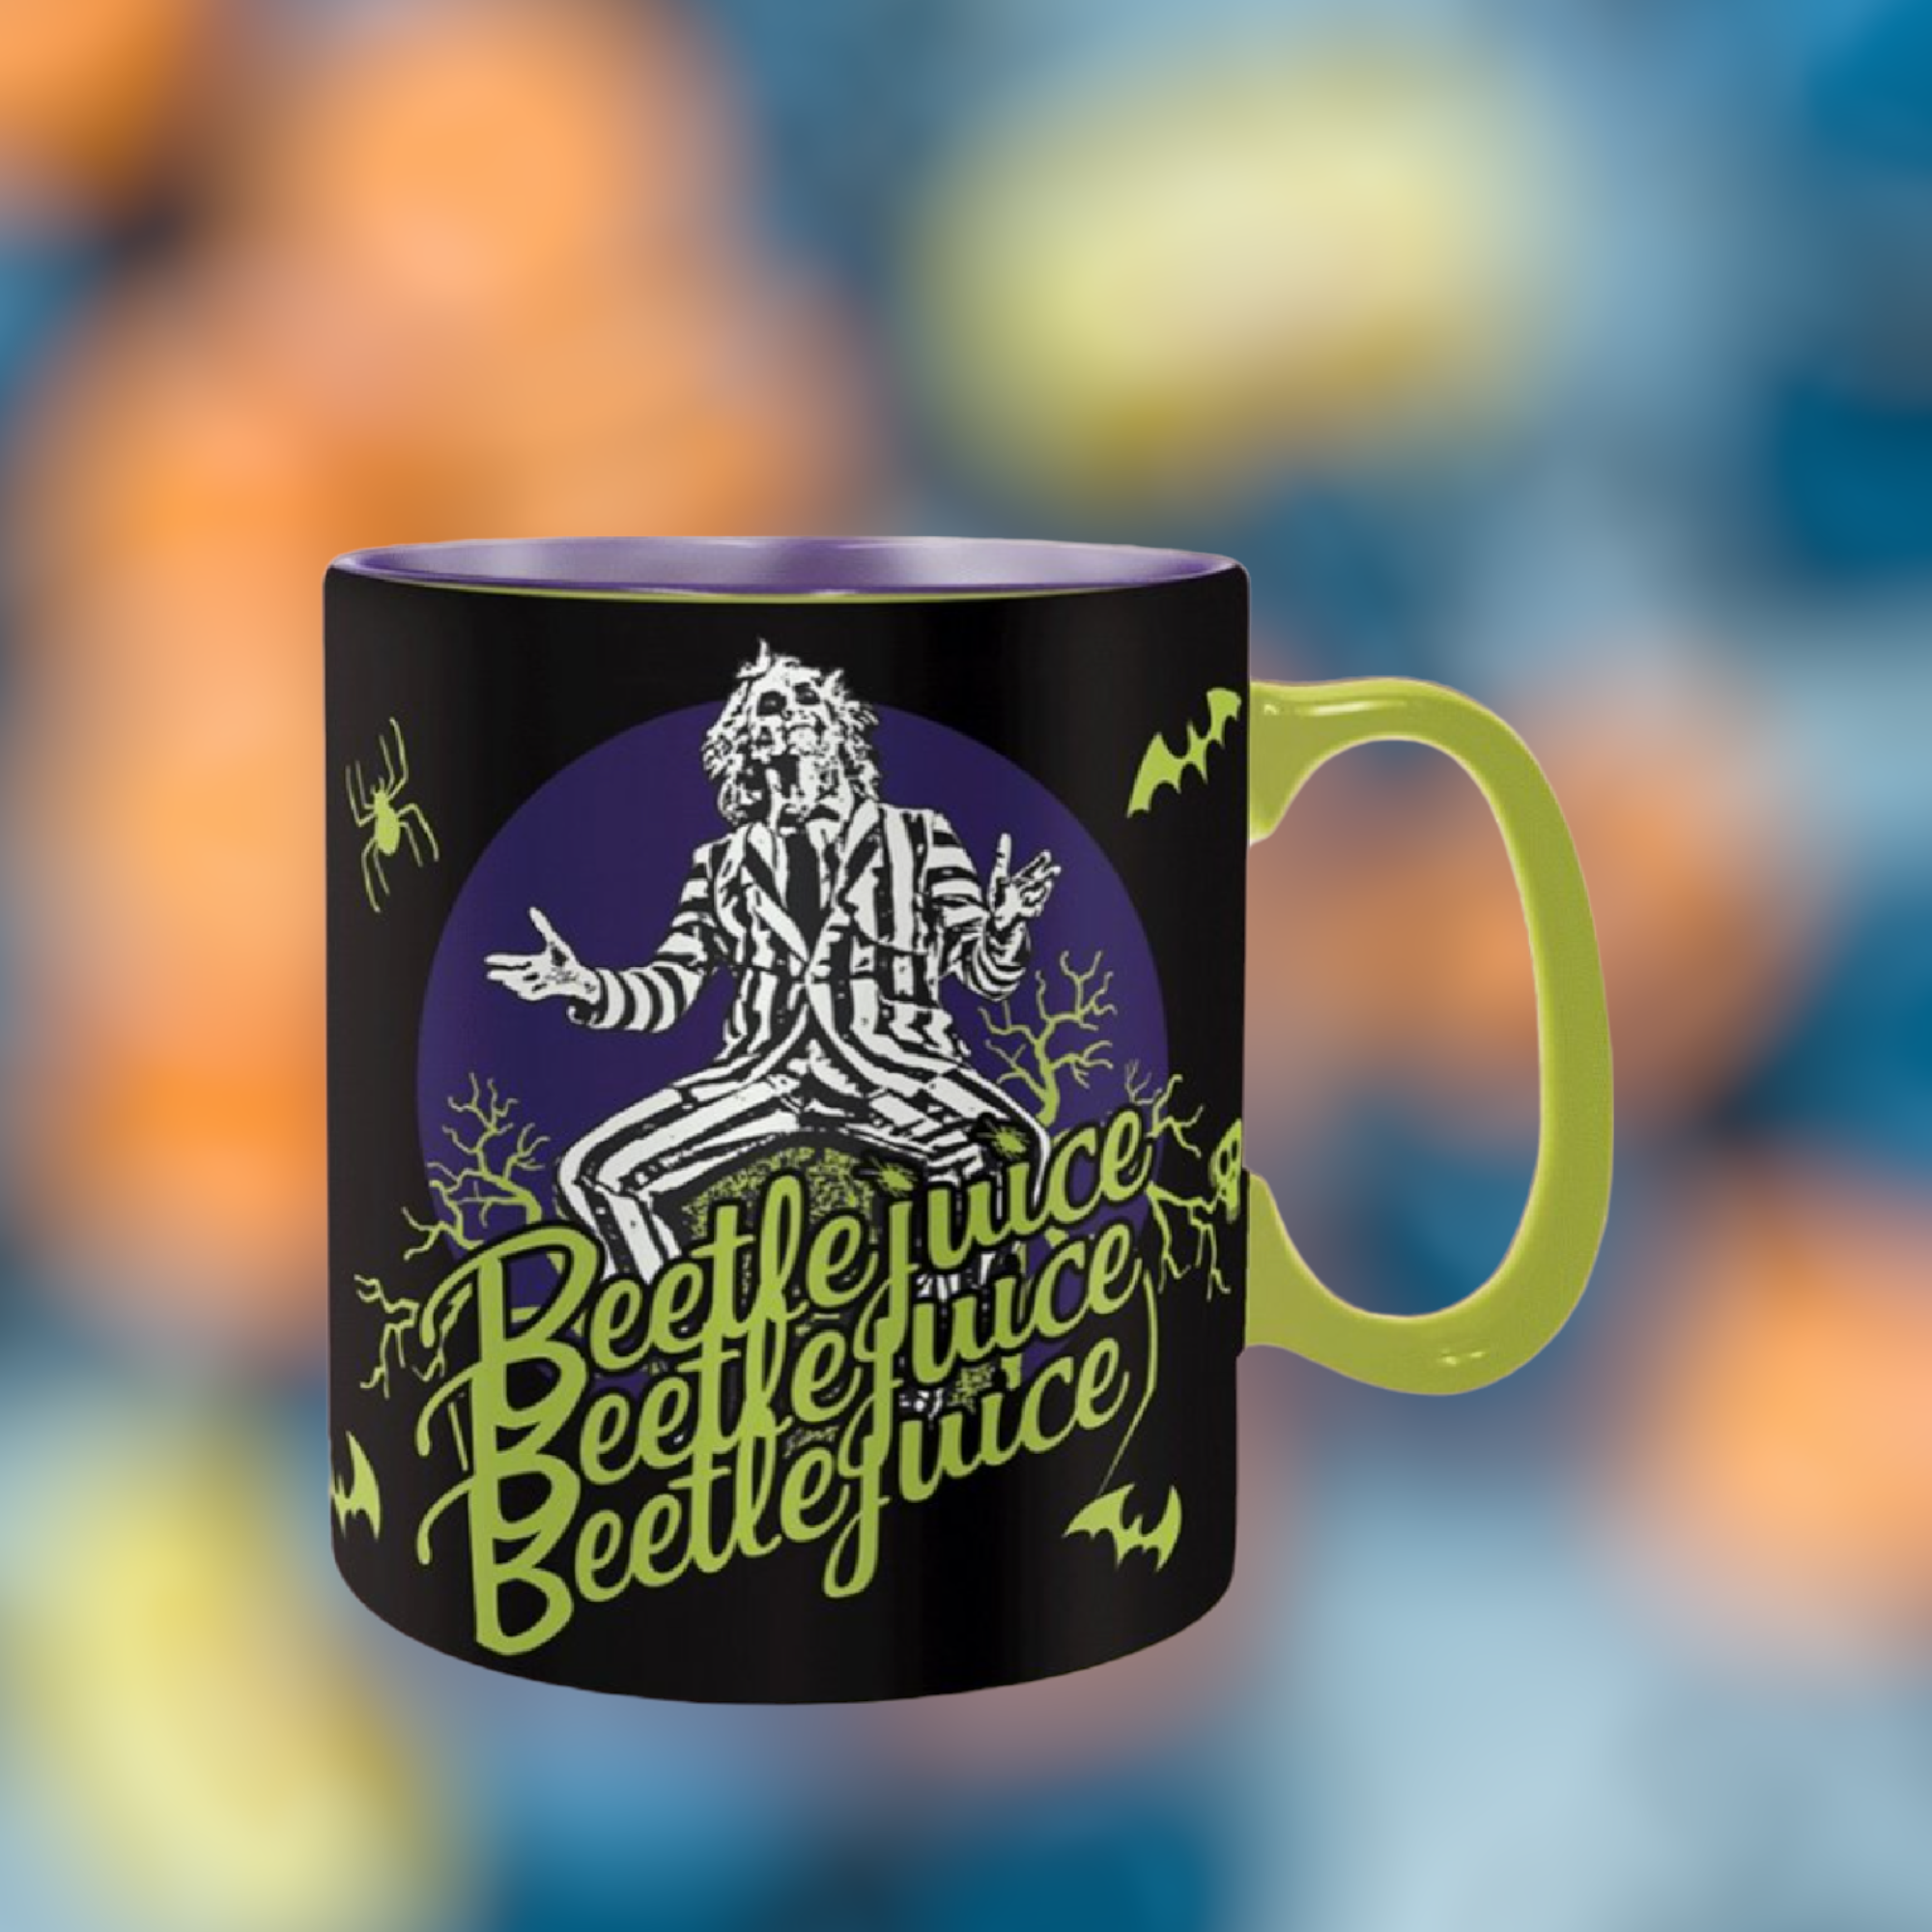 Beetlejuice : Mug thermo-réactif